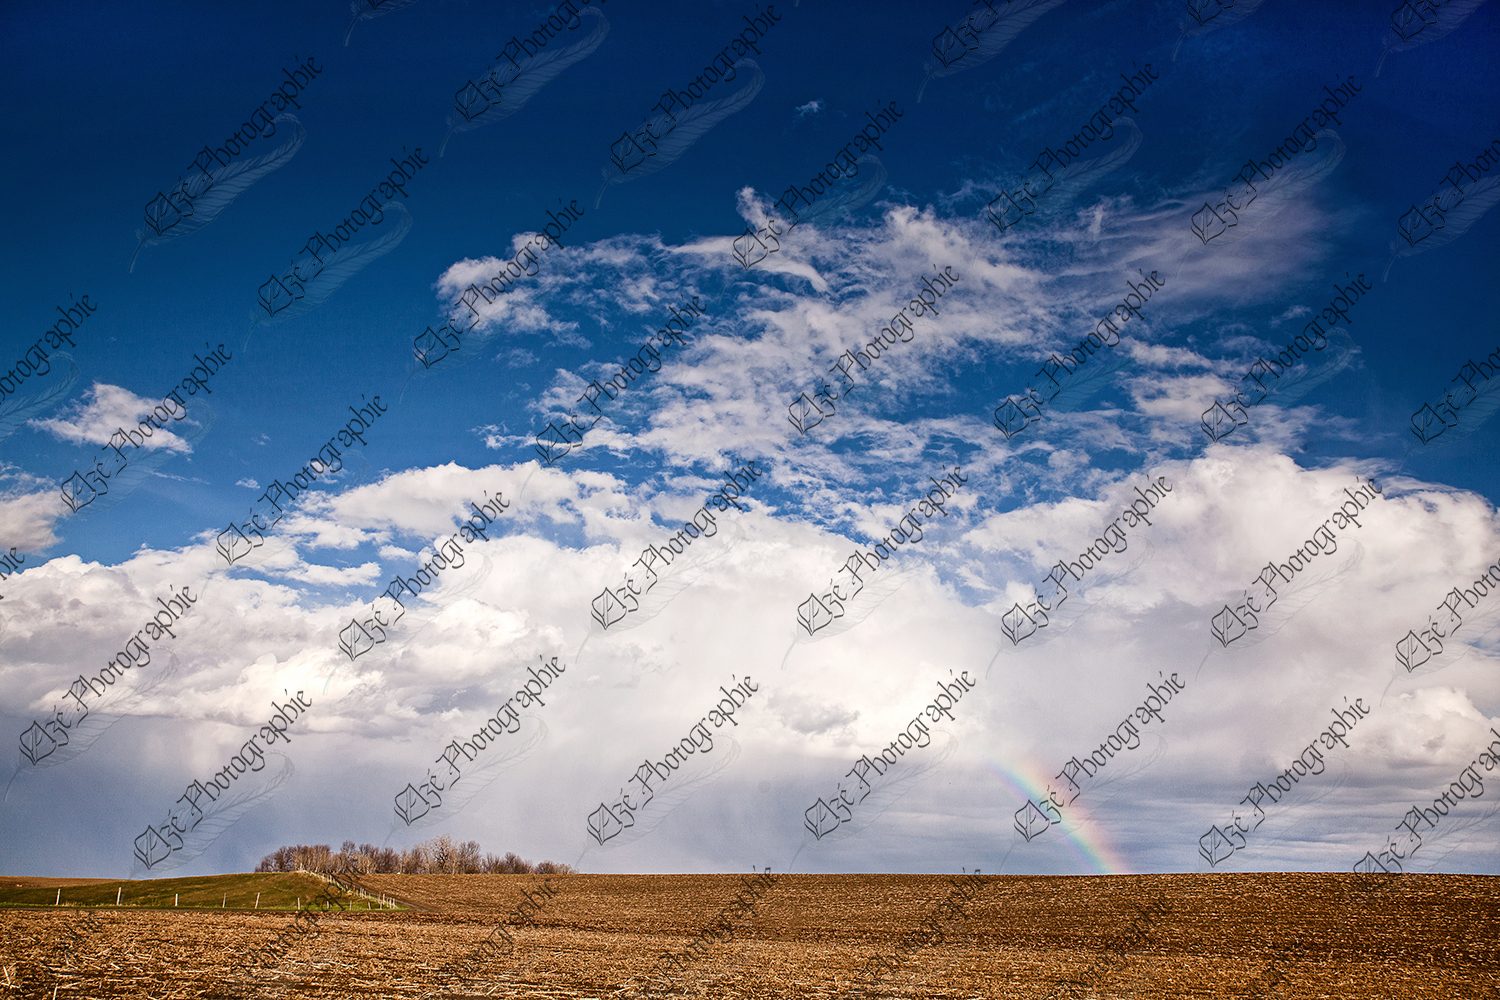 elze_photo_8639_nature_champ_ciel_agricultural_rainbow